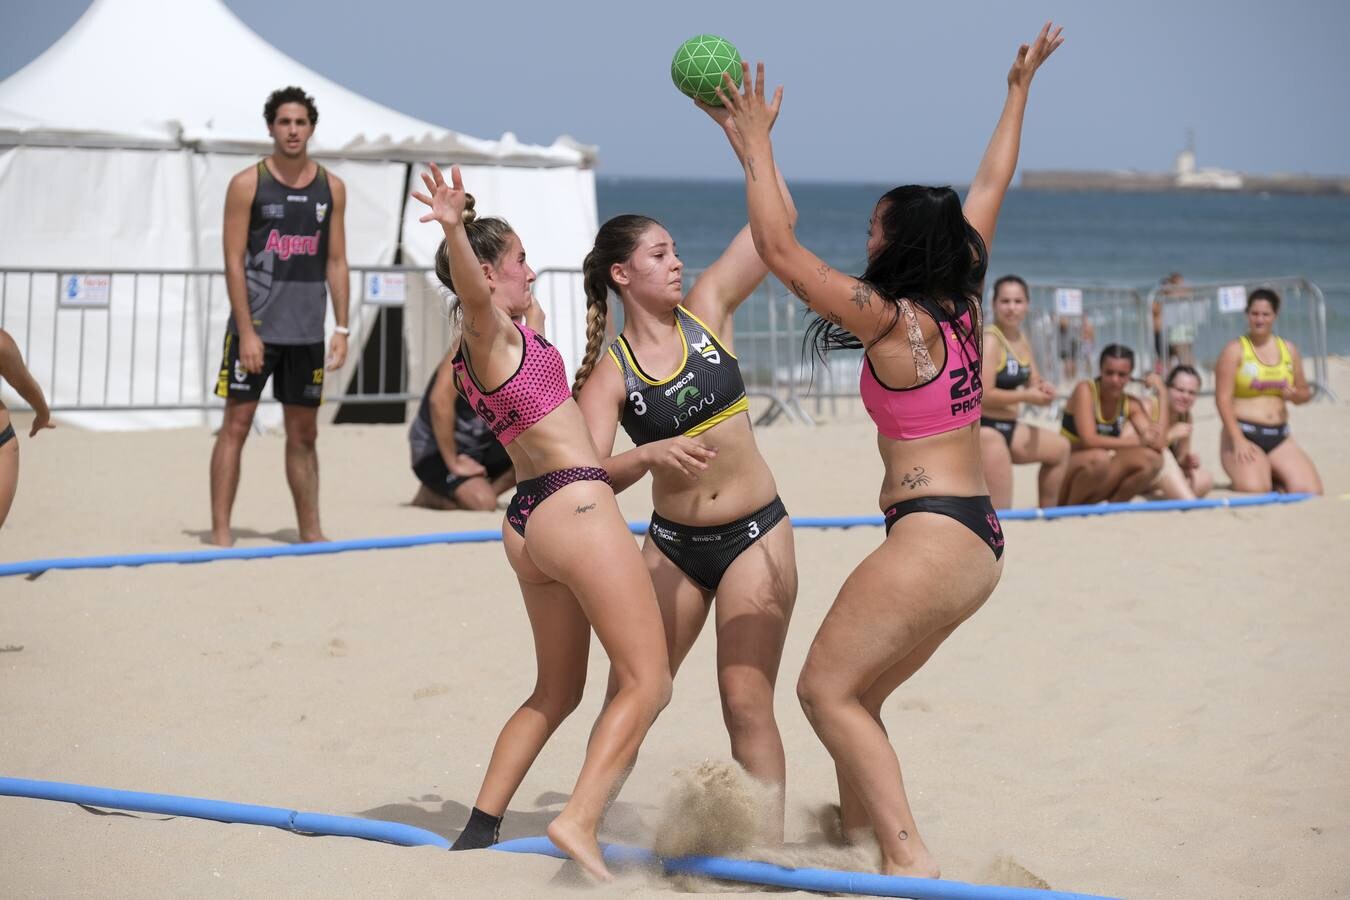 FOTOS CÁDIZ: El Trofeo Carranza de balonmano playa, en imágenes